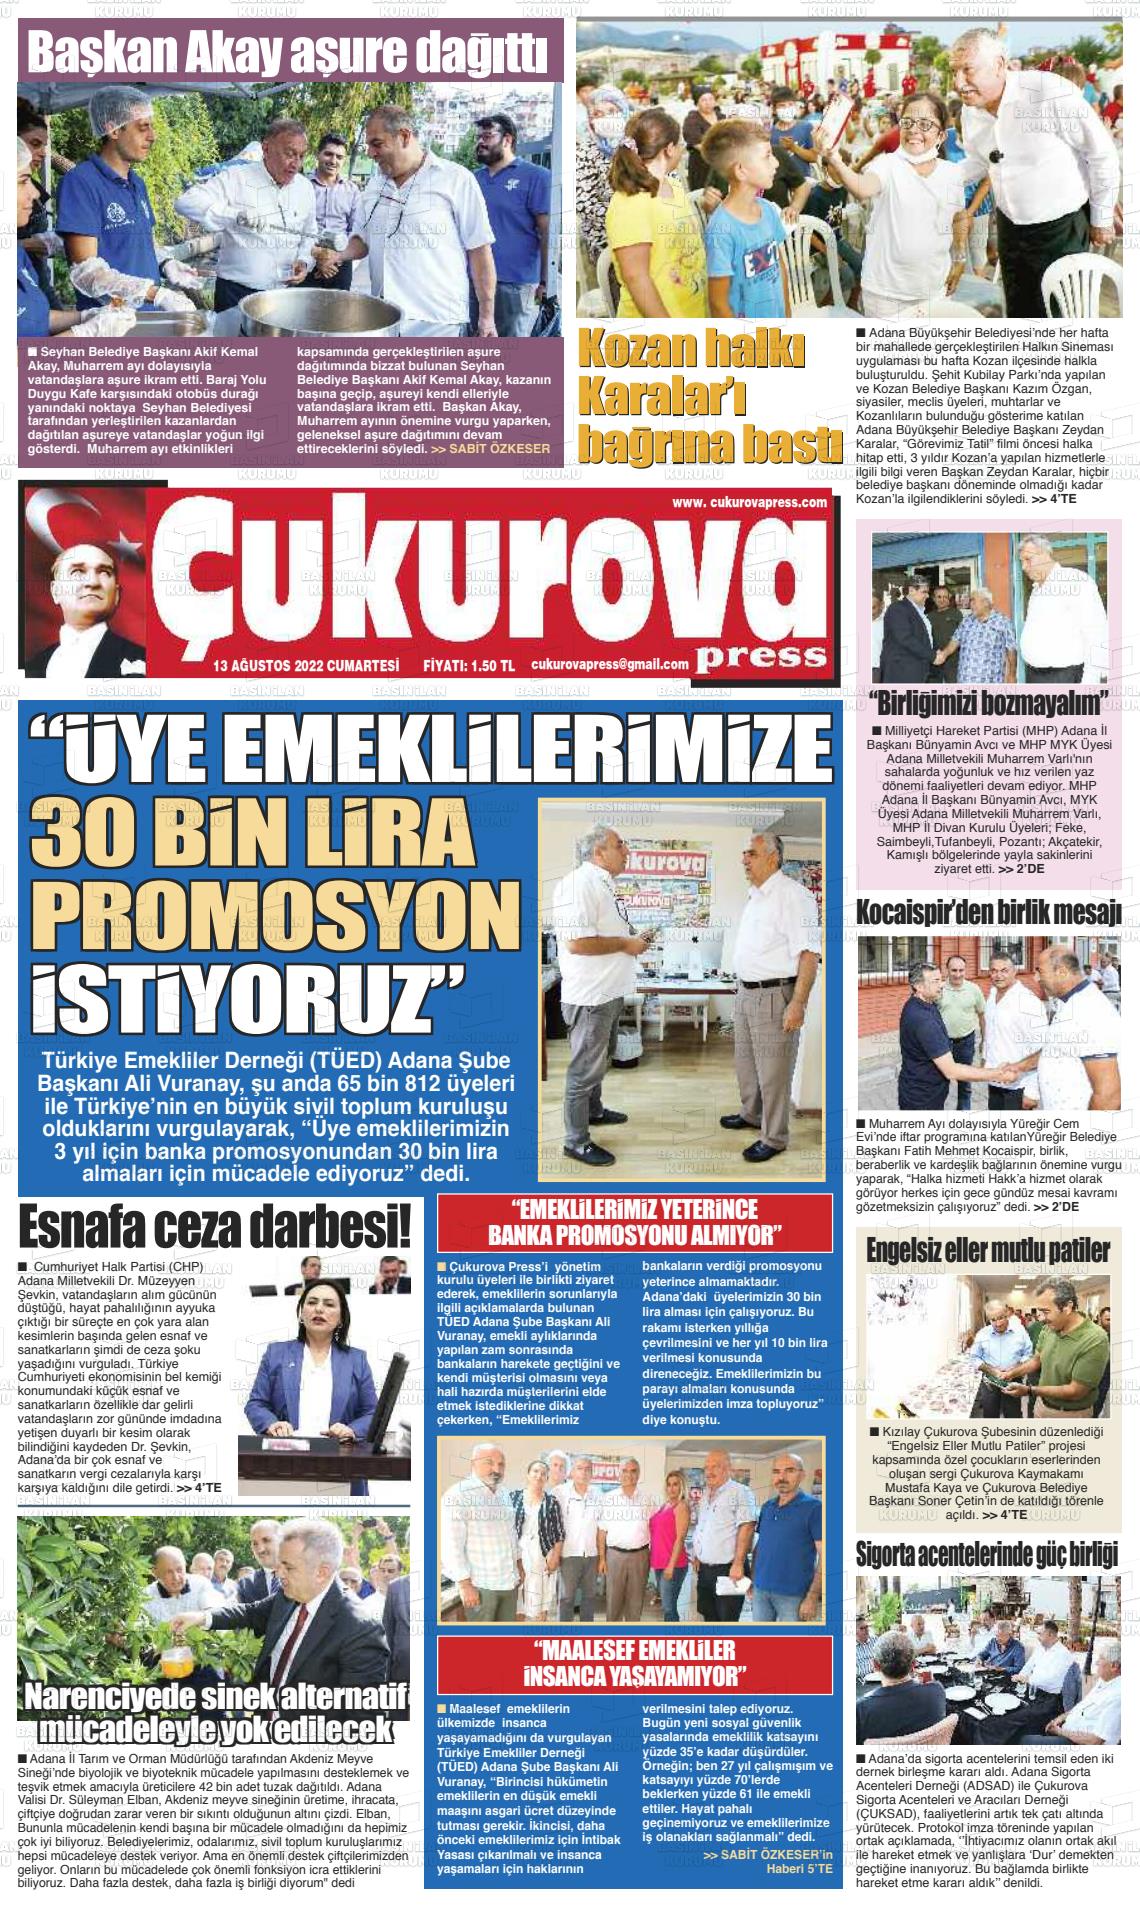 13 Ağustos 2022 Çukurova Press Gazete Manşeti